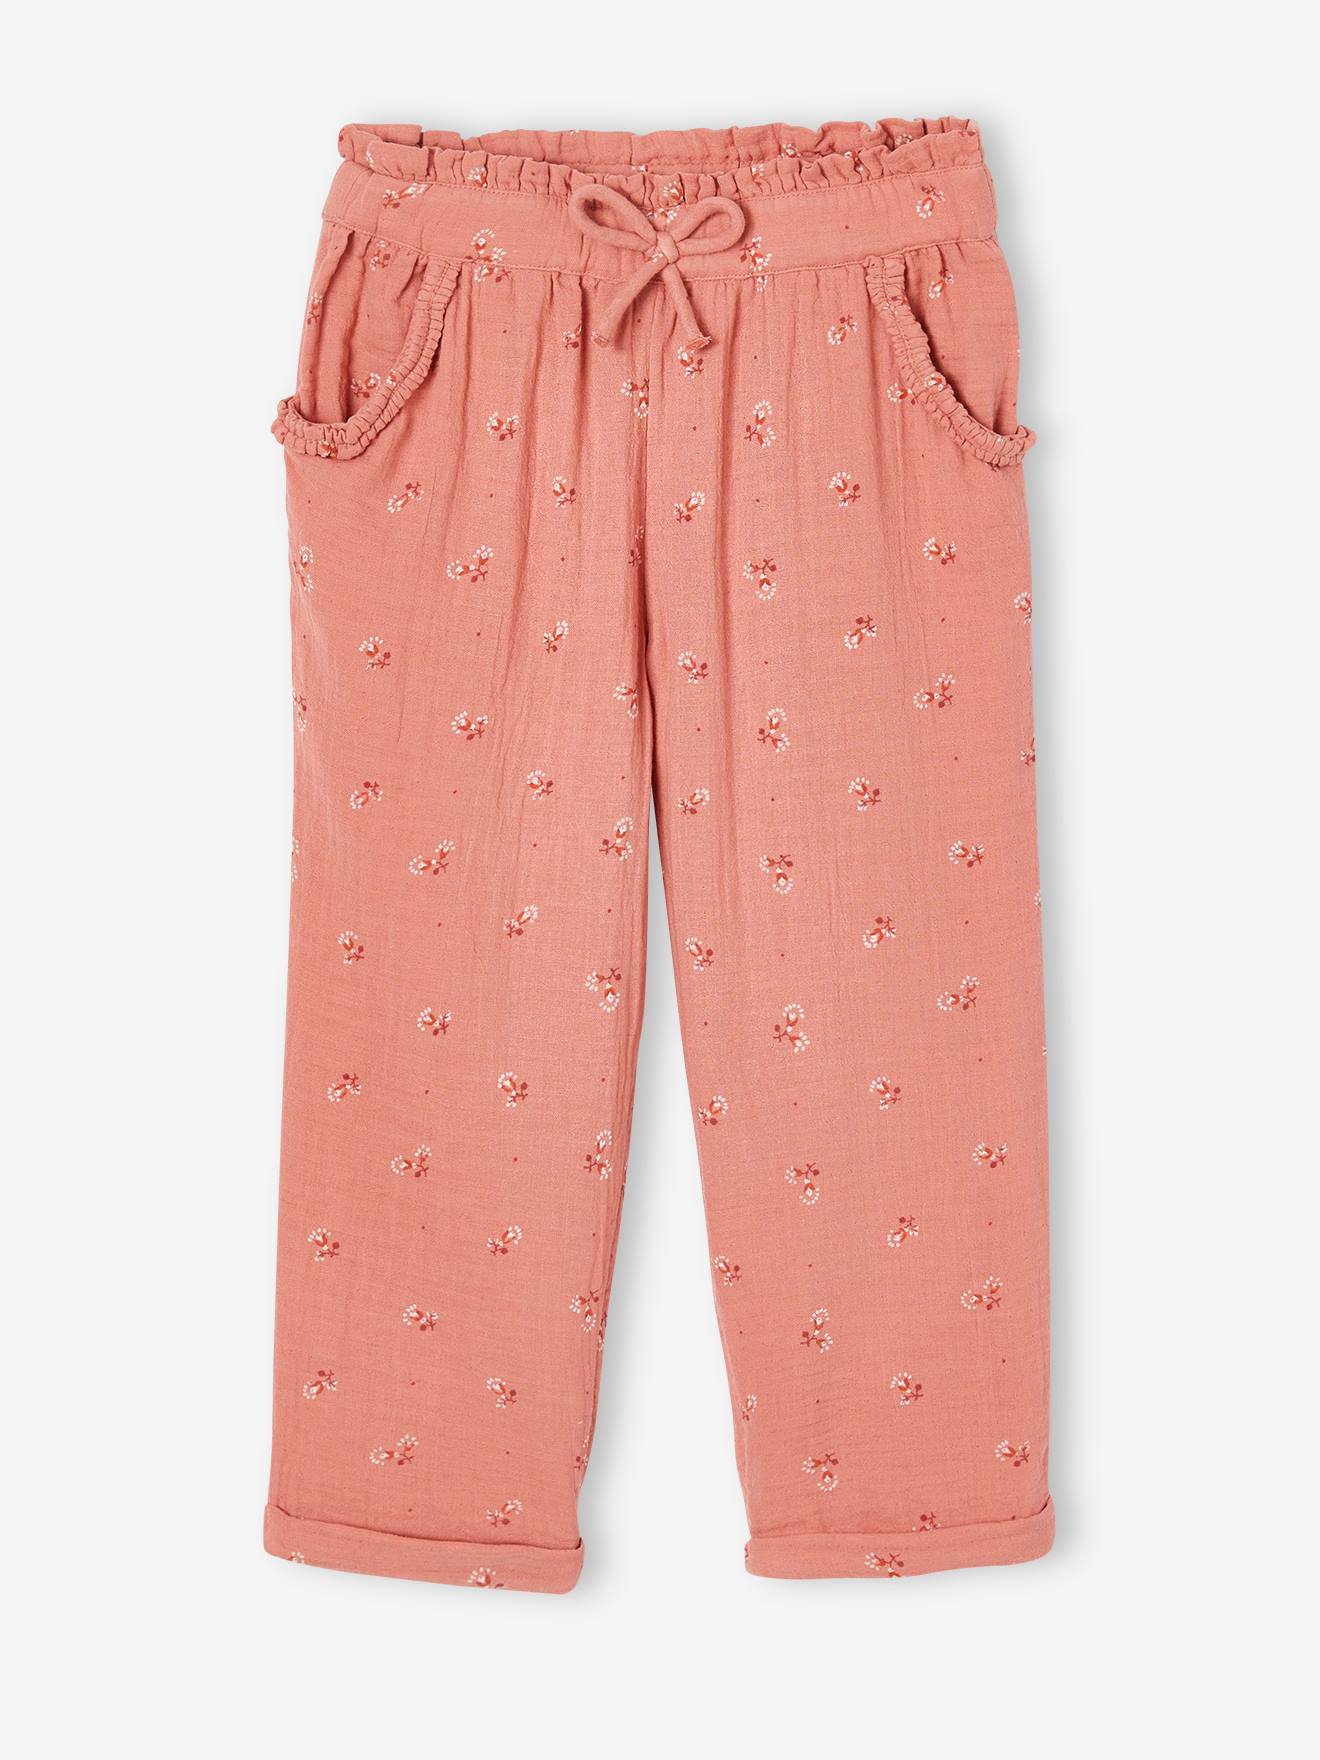 Pantalón pesquero de gasa de algodón estampado de flores, para niña rosado  - Vertbaudet